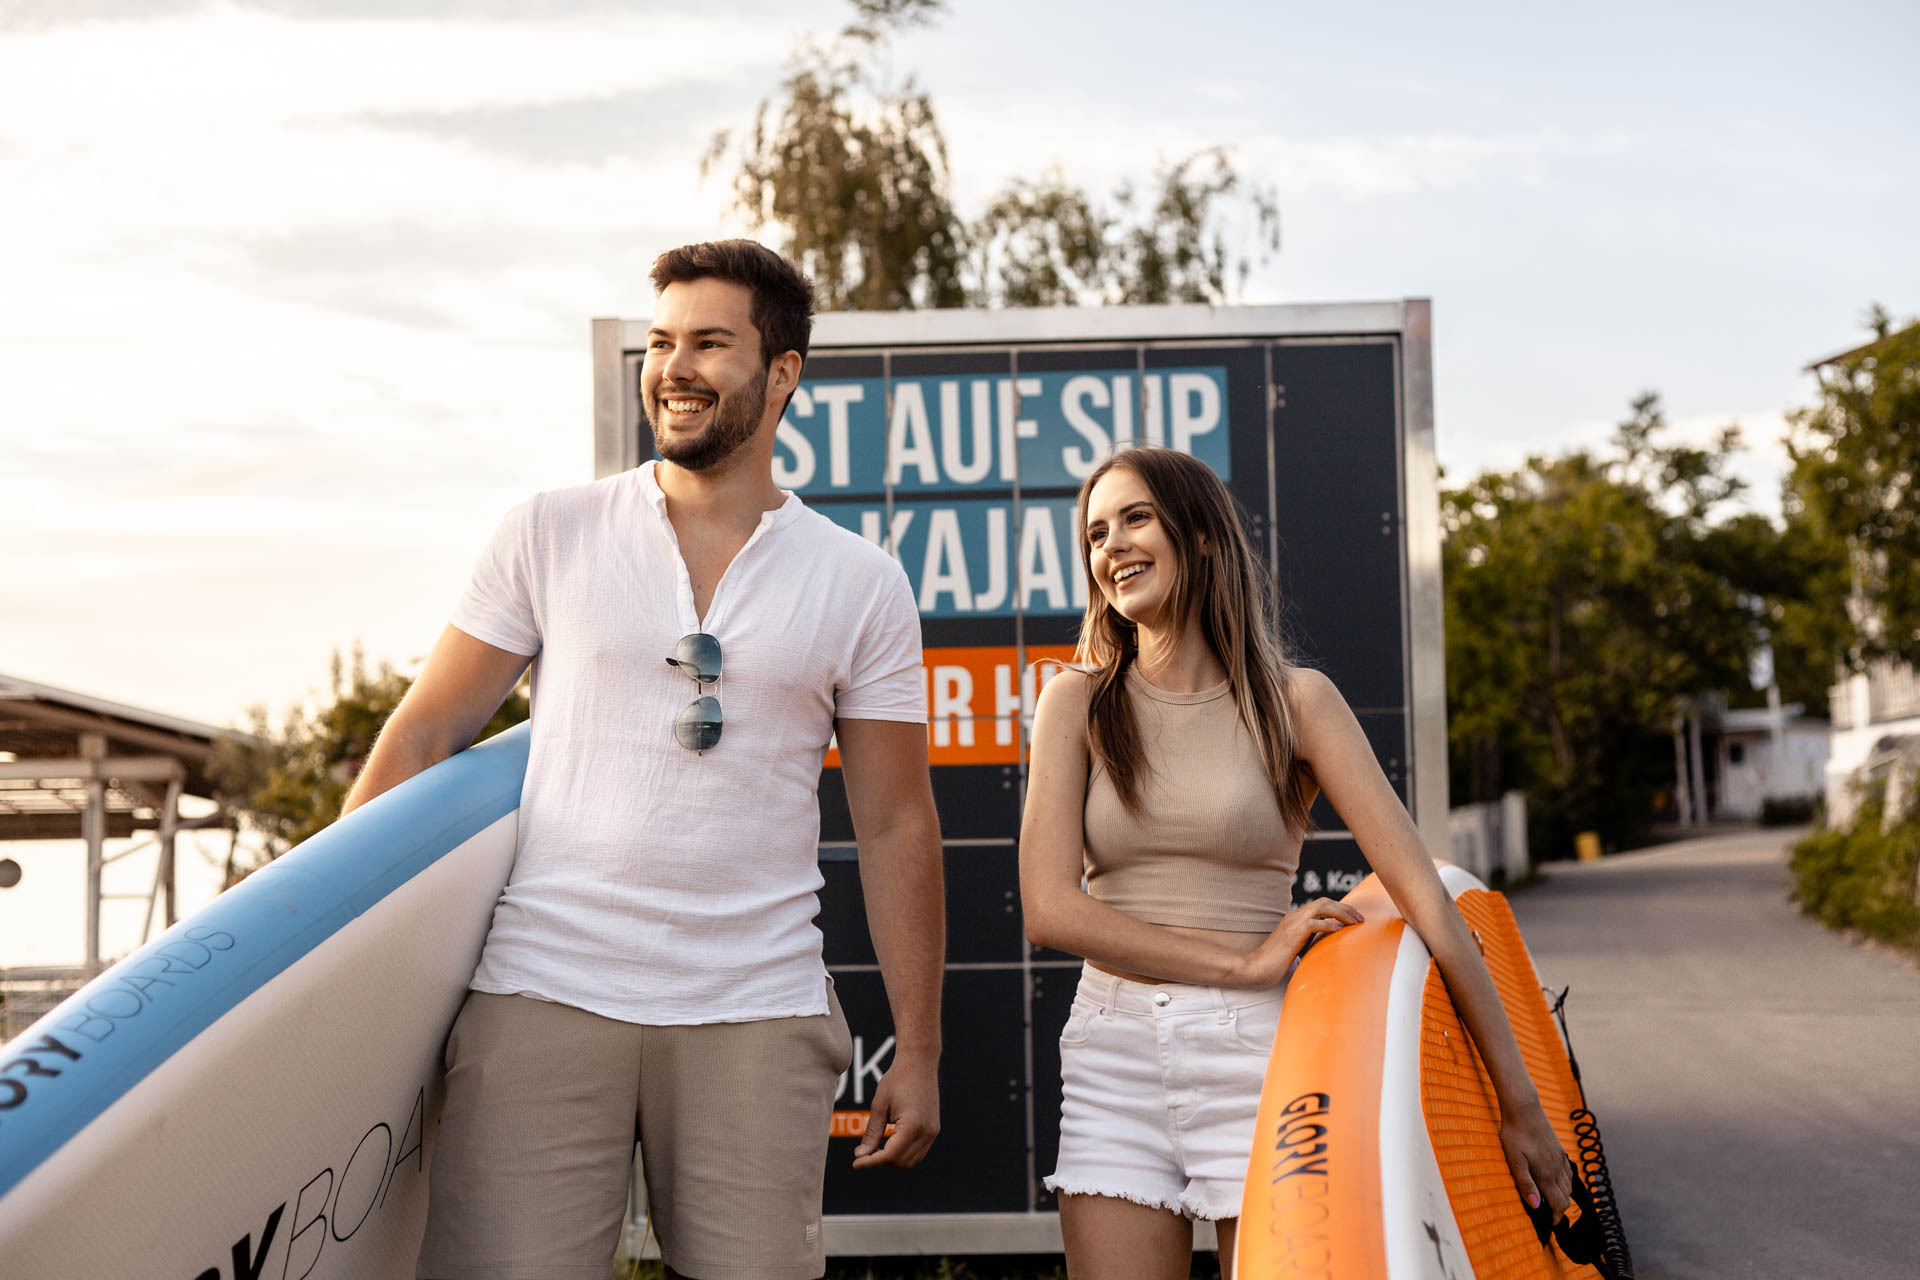 SUP & Kayak Automat in Wien an der neuen Donau